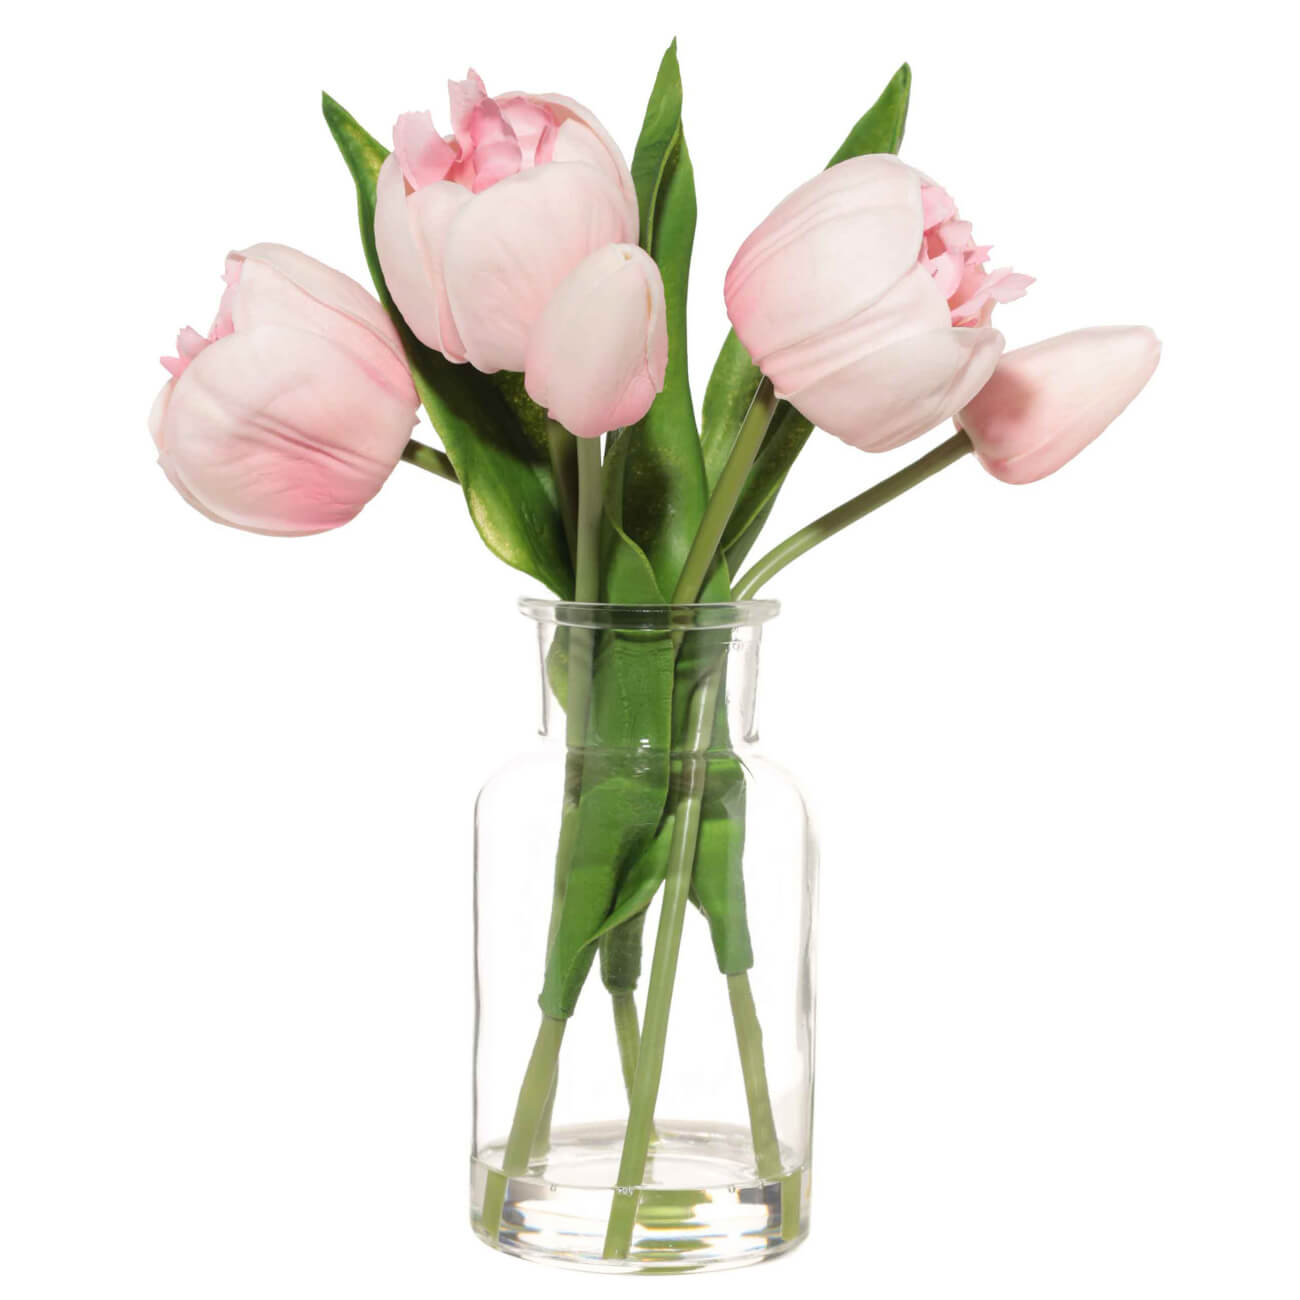 Букет искусственный, 21 см, в вазе, полиуретан/стекло, Розовые тюльпаны, Tulip garden букет коралина идет в школу